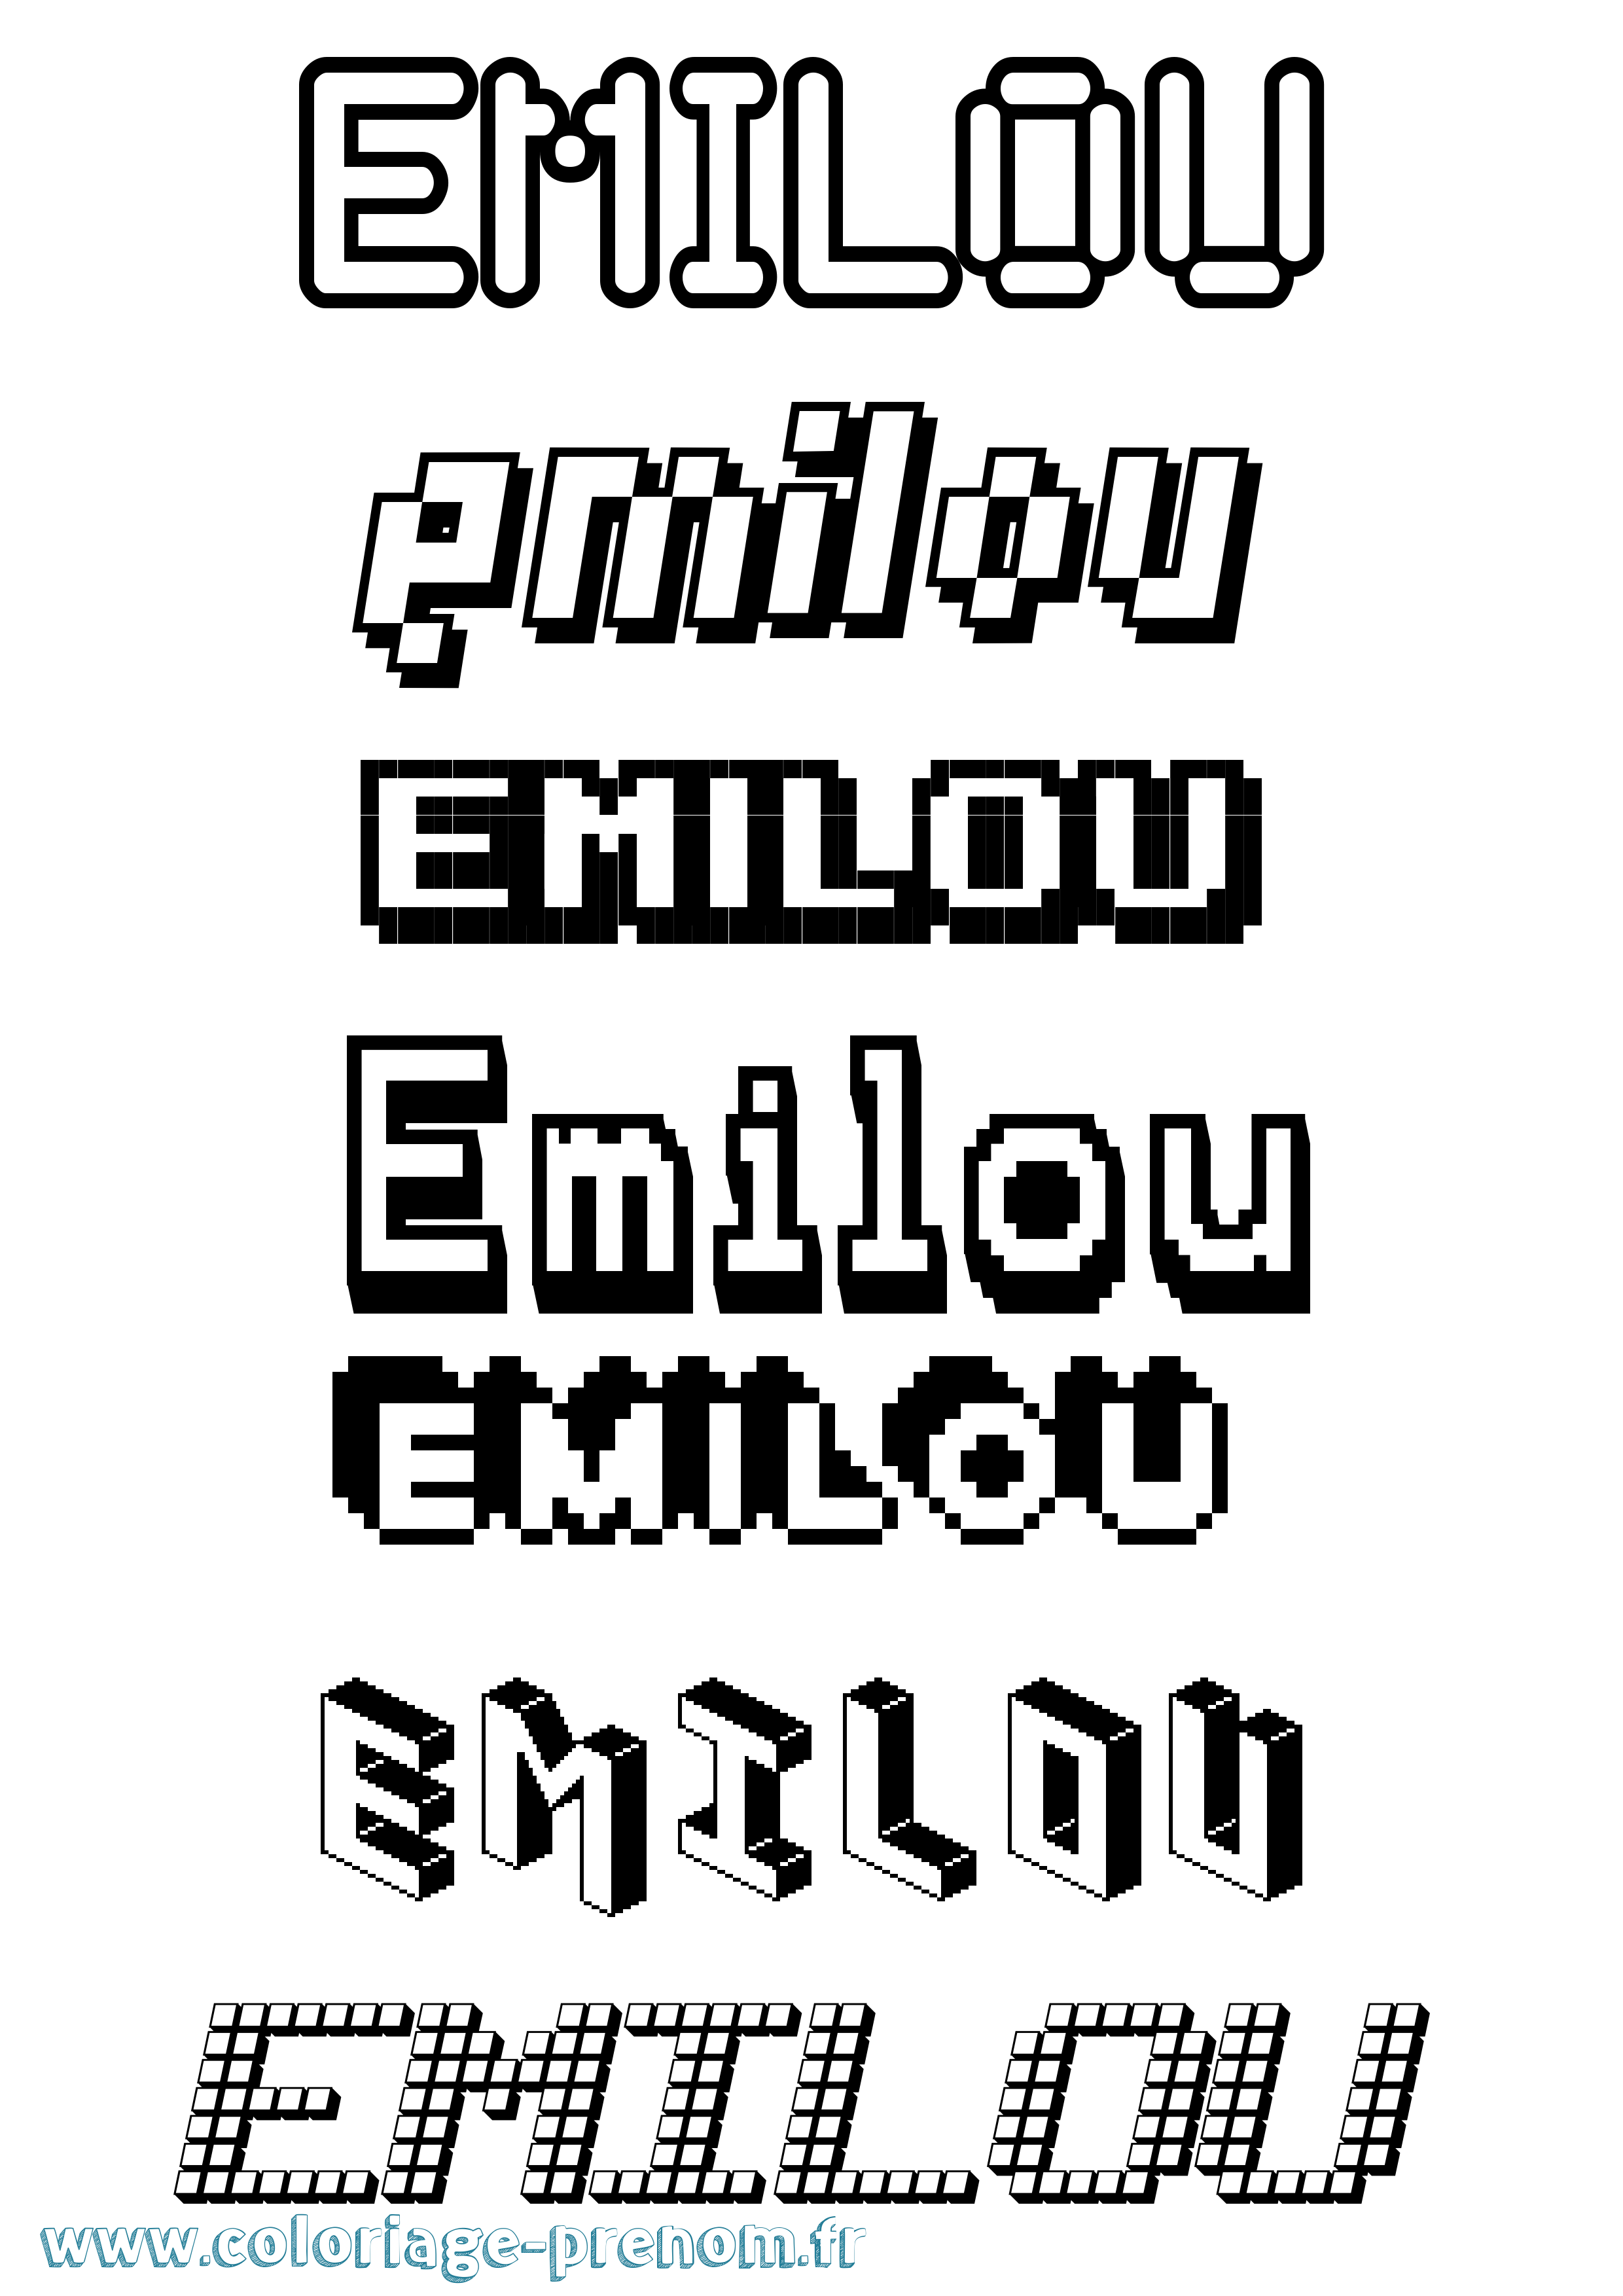 Coloriage prénom Emilou Pixel